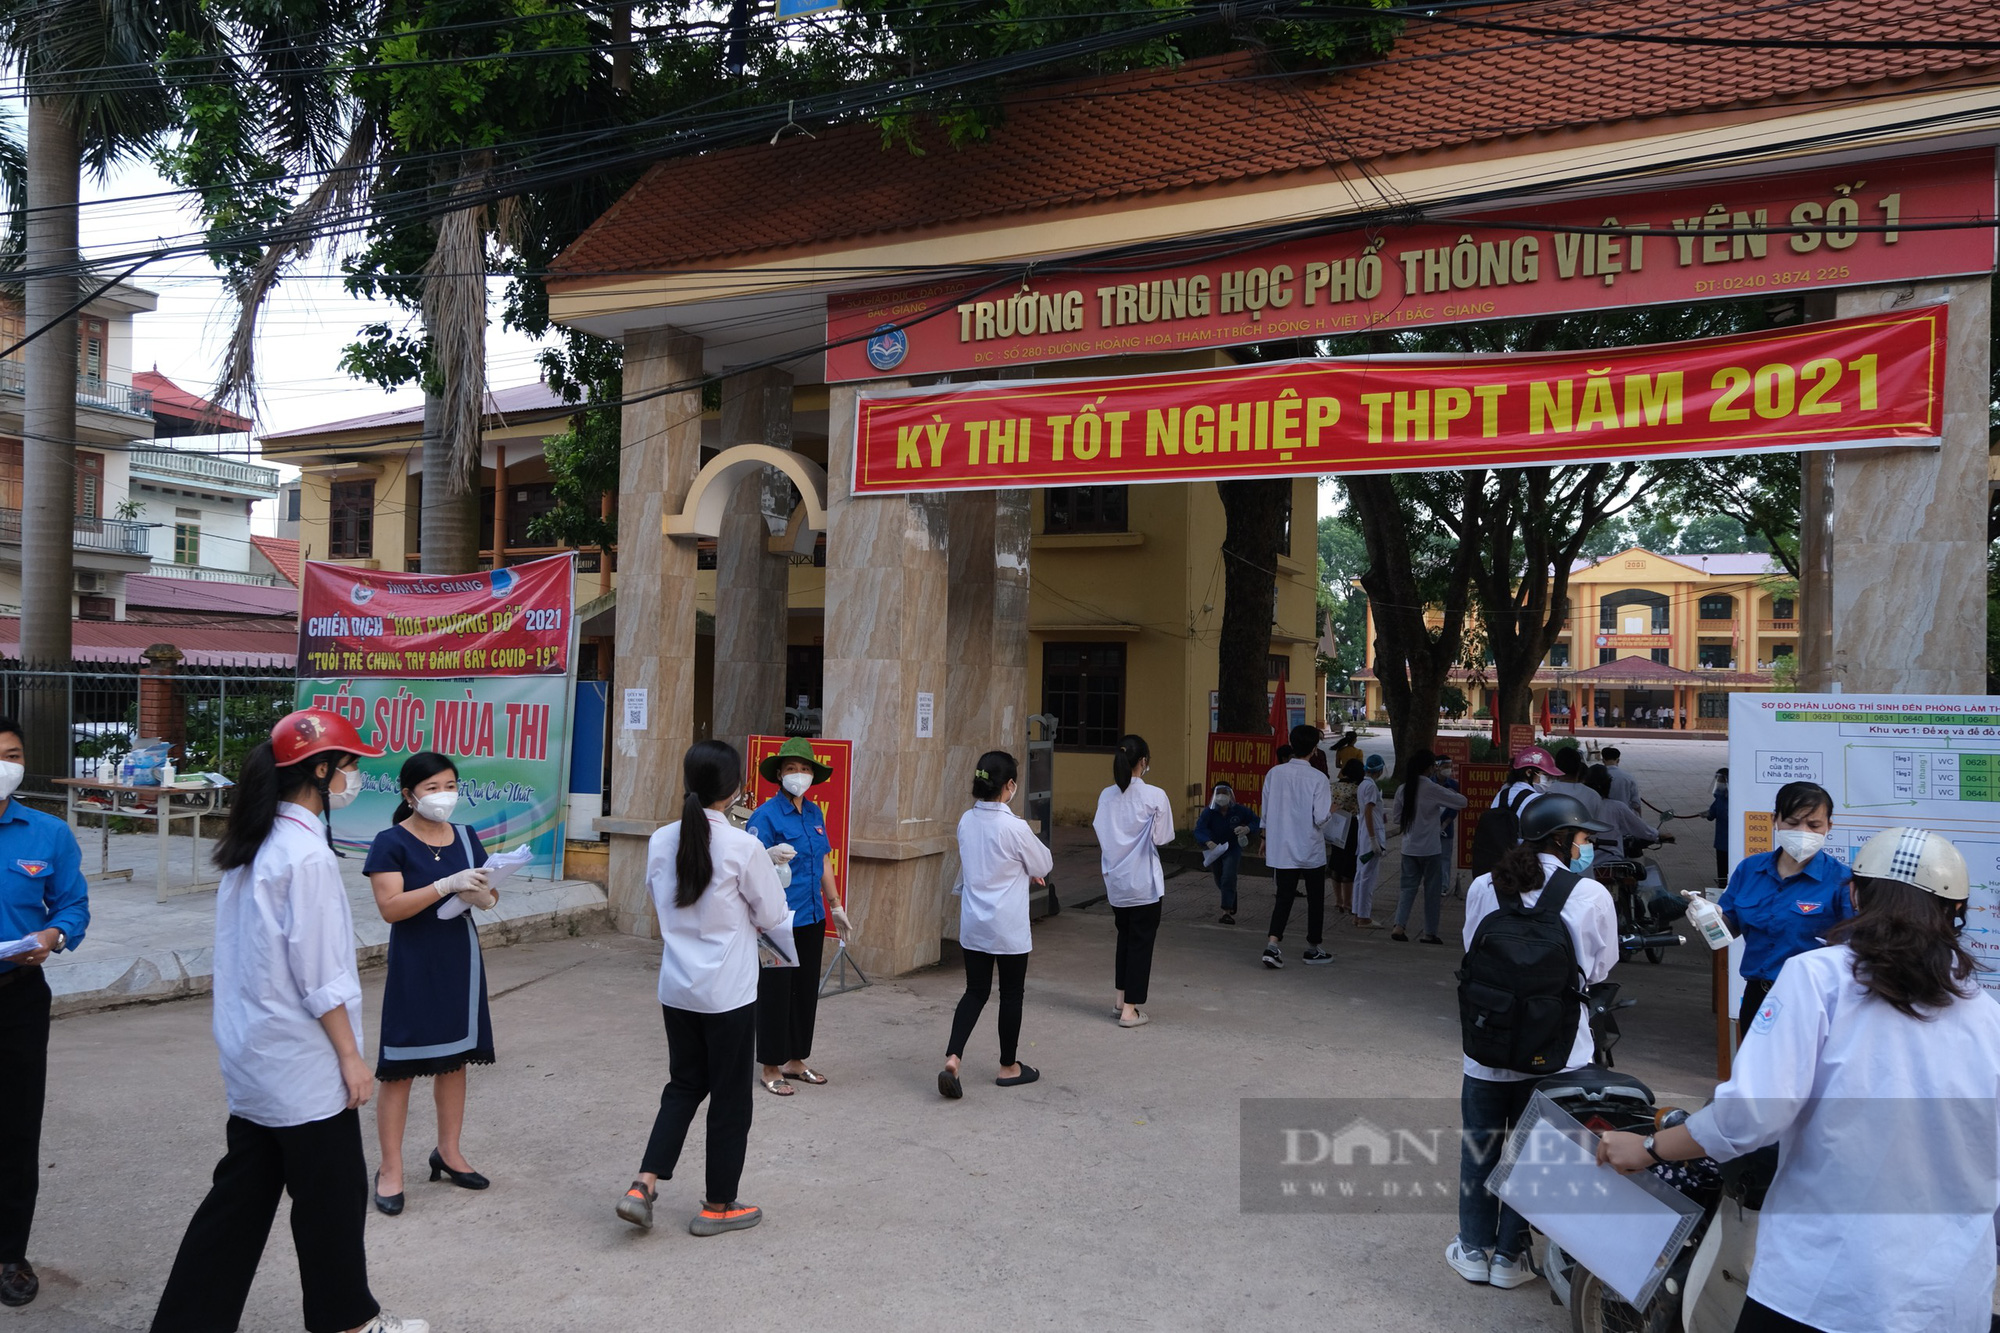 Bắc Giang: Thí sinh thi tốt nghiệp THPT có nguy cơ cao được ngồi phòng riêng biệt - Ảnh 1.